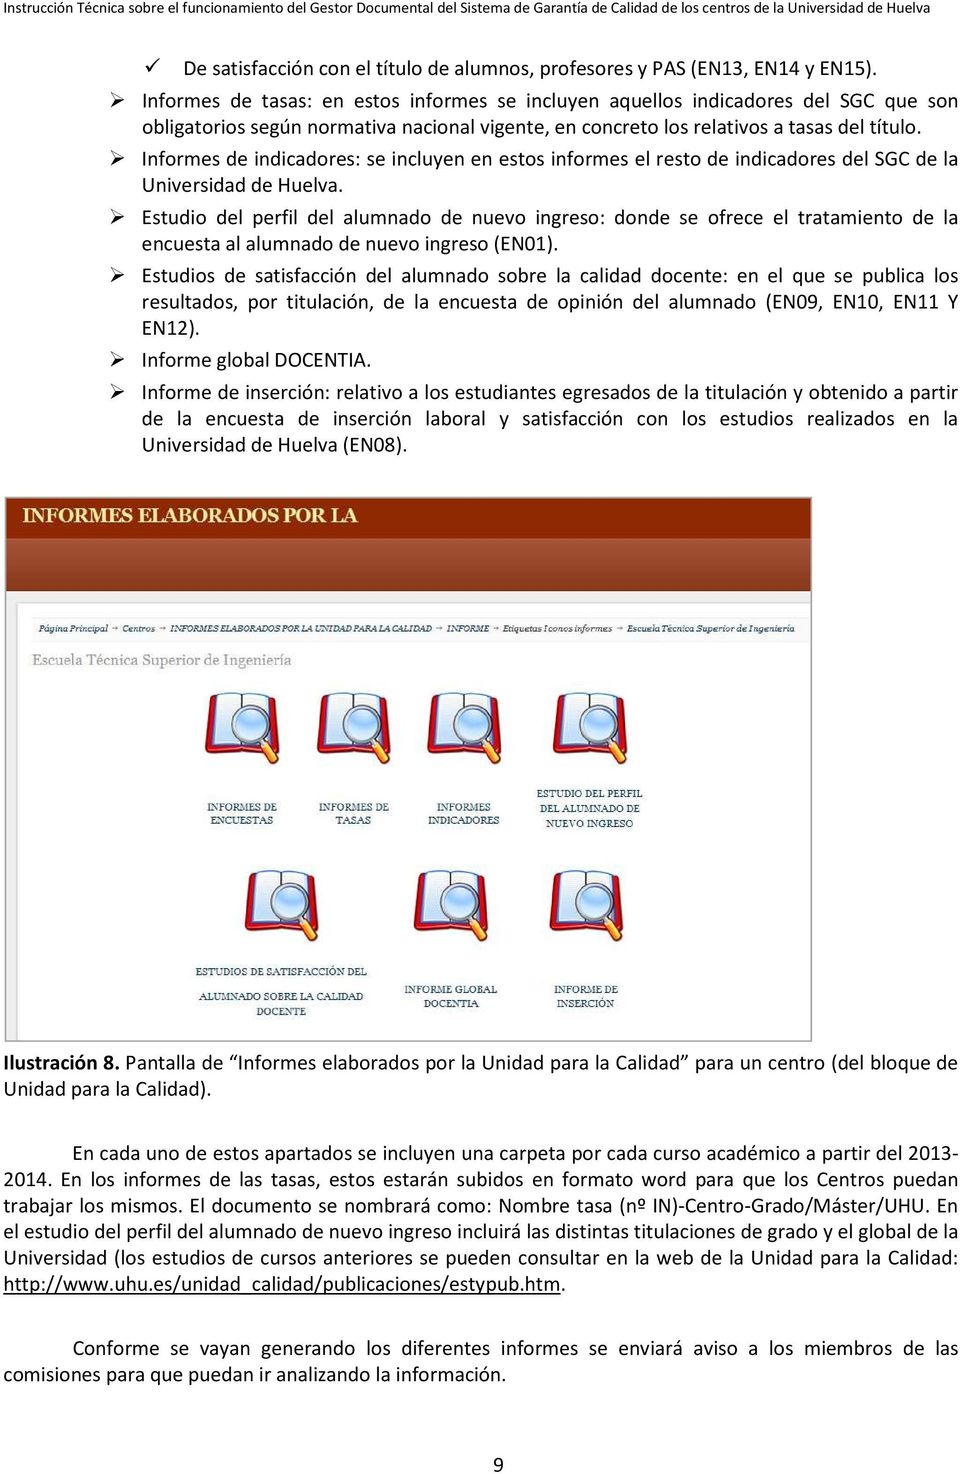 Informes de indicadores: se incluyen en estos informes el resto de indicadores del SGC de la Universidad de Huelva.